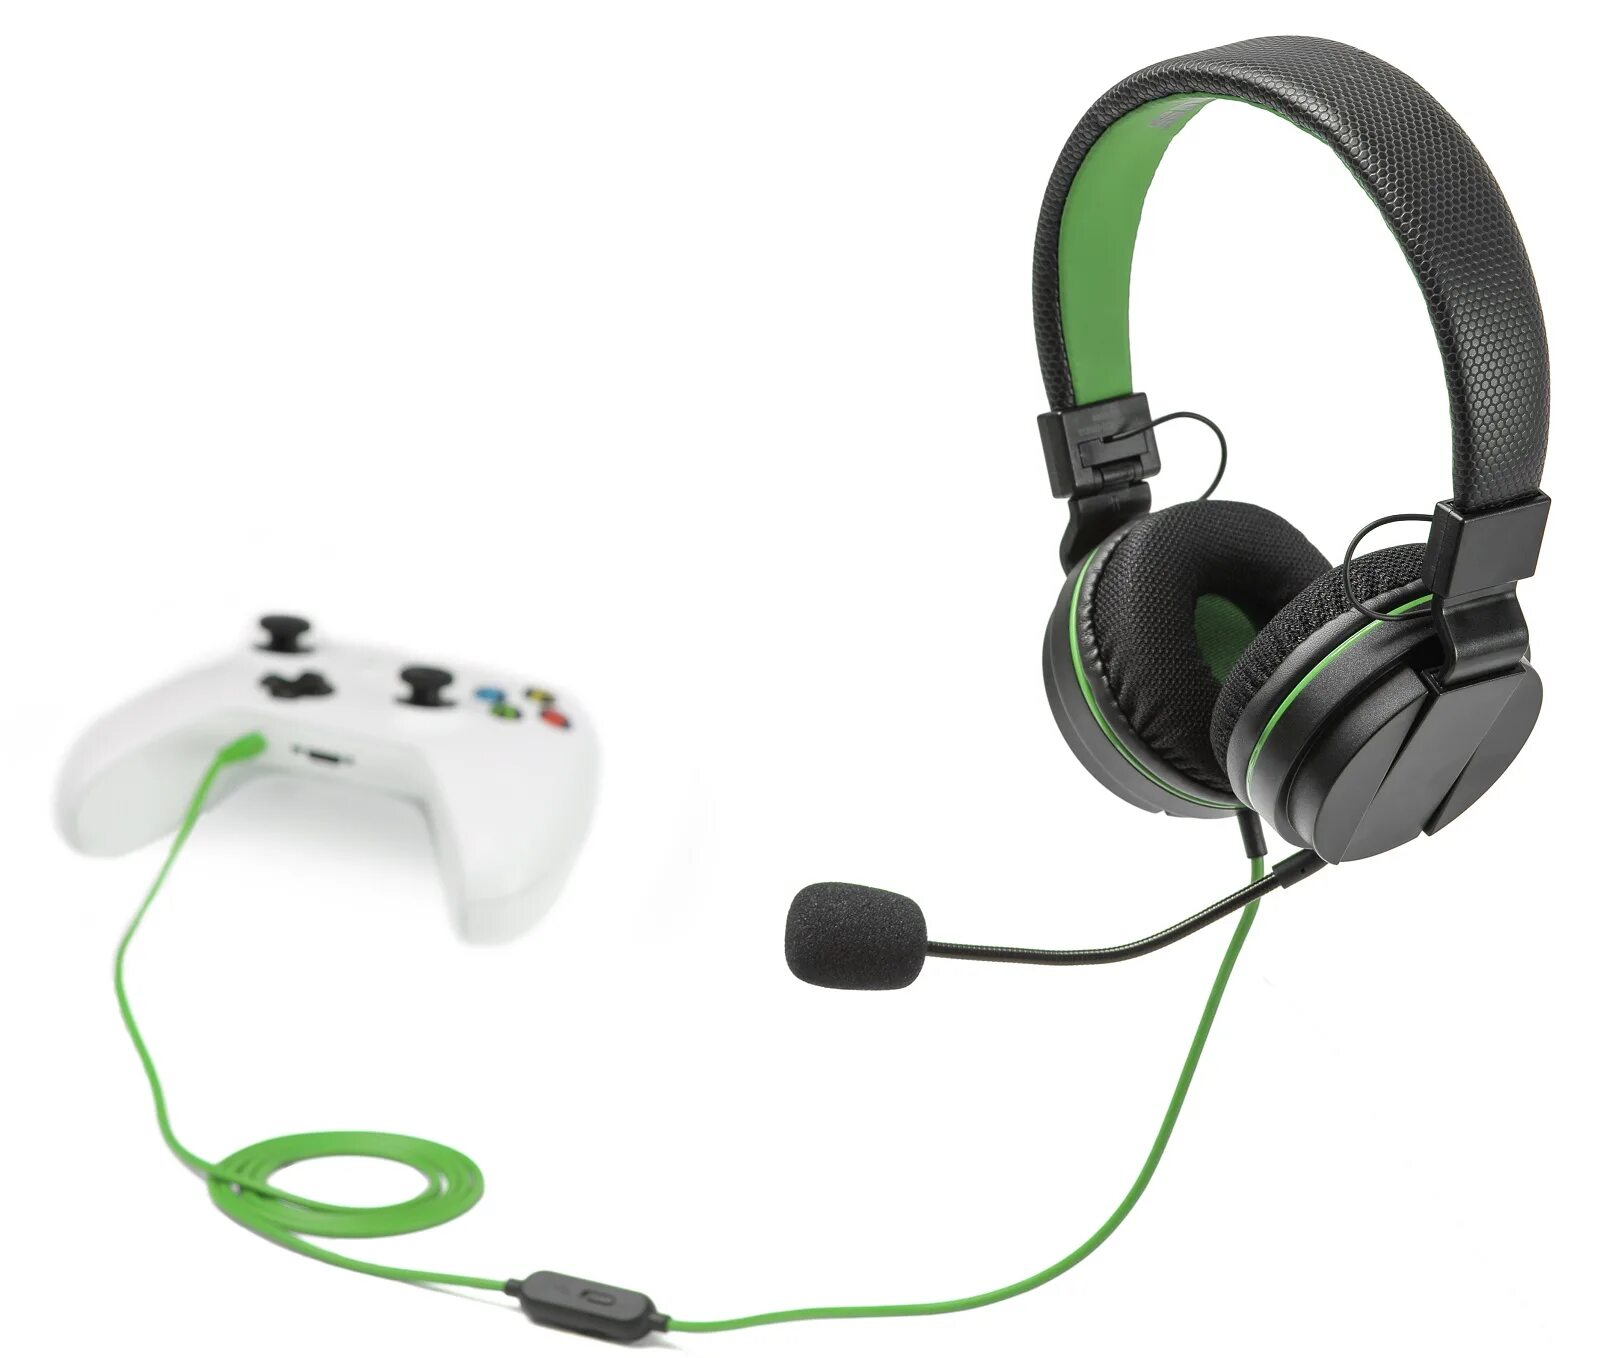 Гарнитура Xbox stereo Headset. X15 Wireless Headset наушники. Наушники с микрофоном для хбокс s. Наушники для Xbox one с микрофоном. Наушники для джойстика